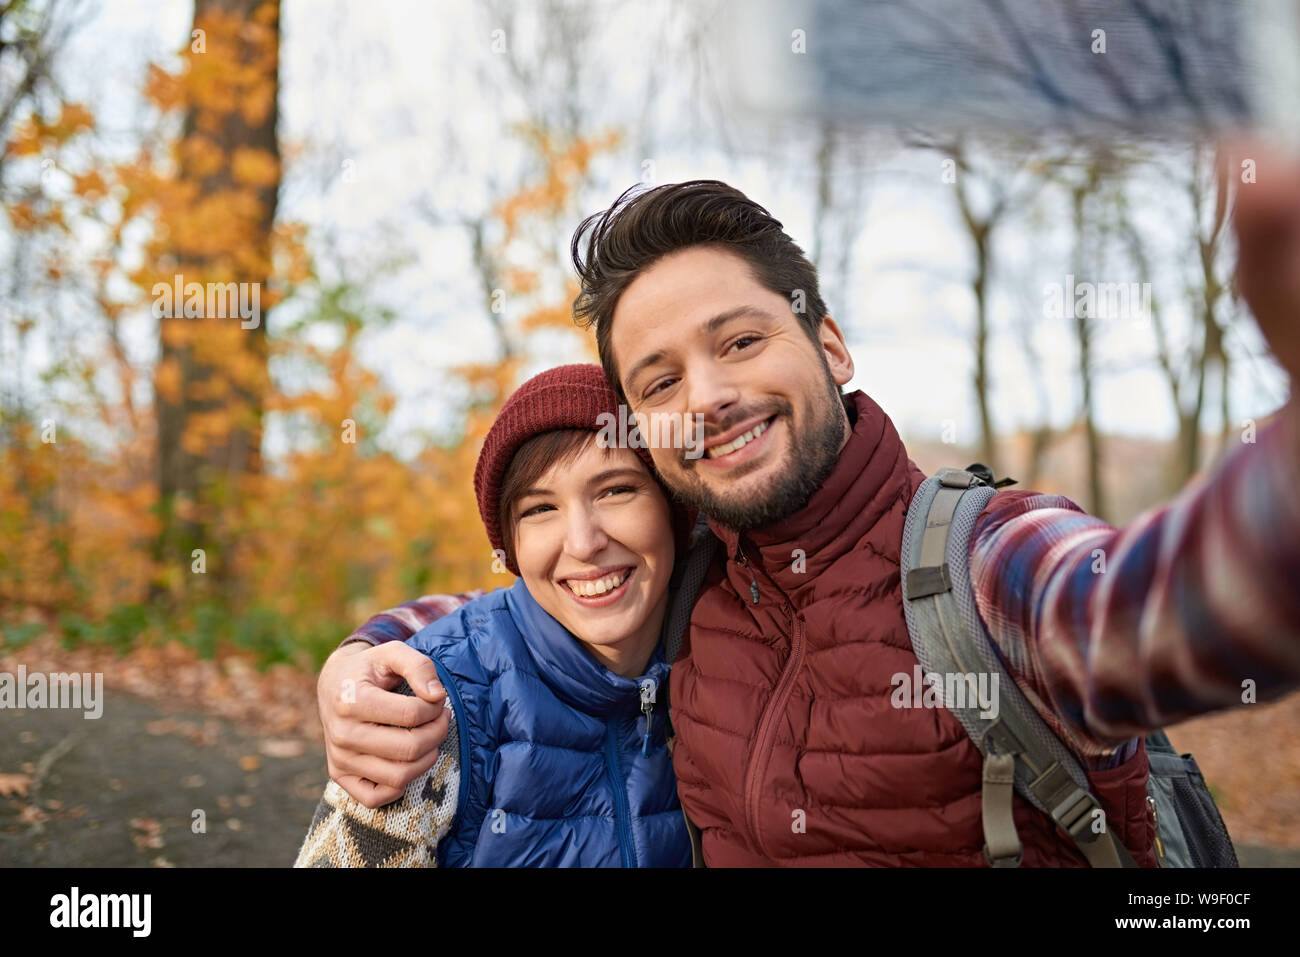 Paar der kanadischen Millennials selfies nehmen mit einem Smartphone in einem Fall Forrest Stockfoto